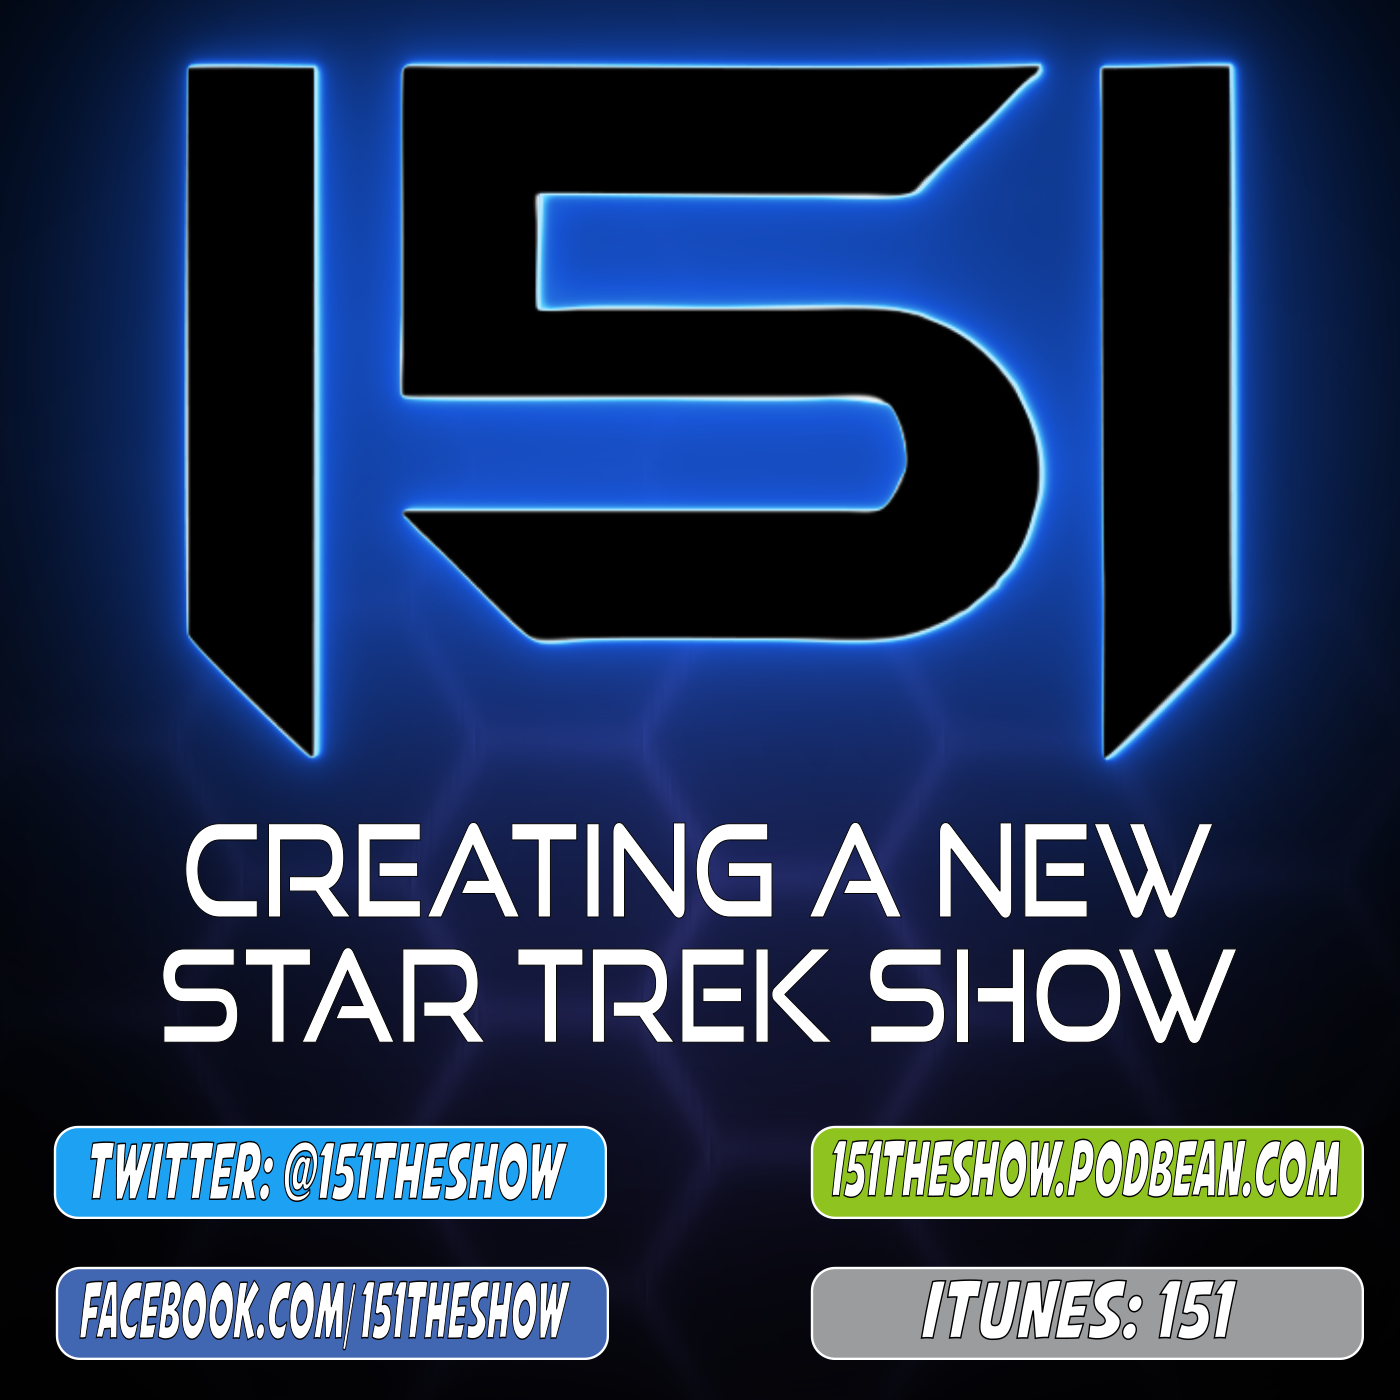 Creating a NEW Star Trek Show